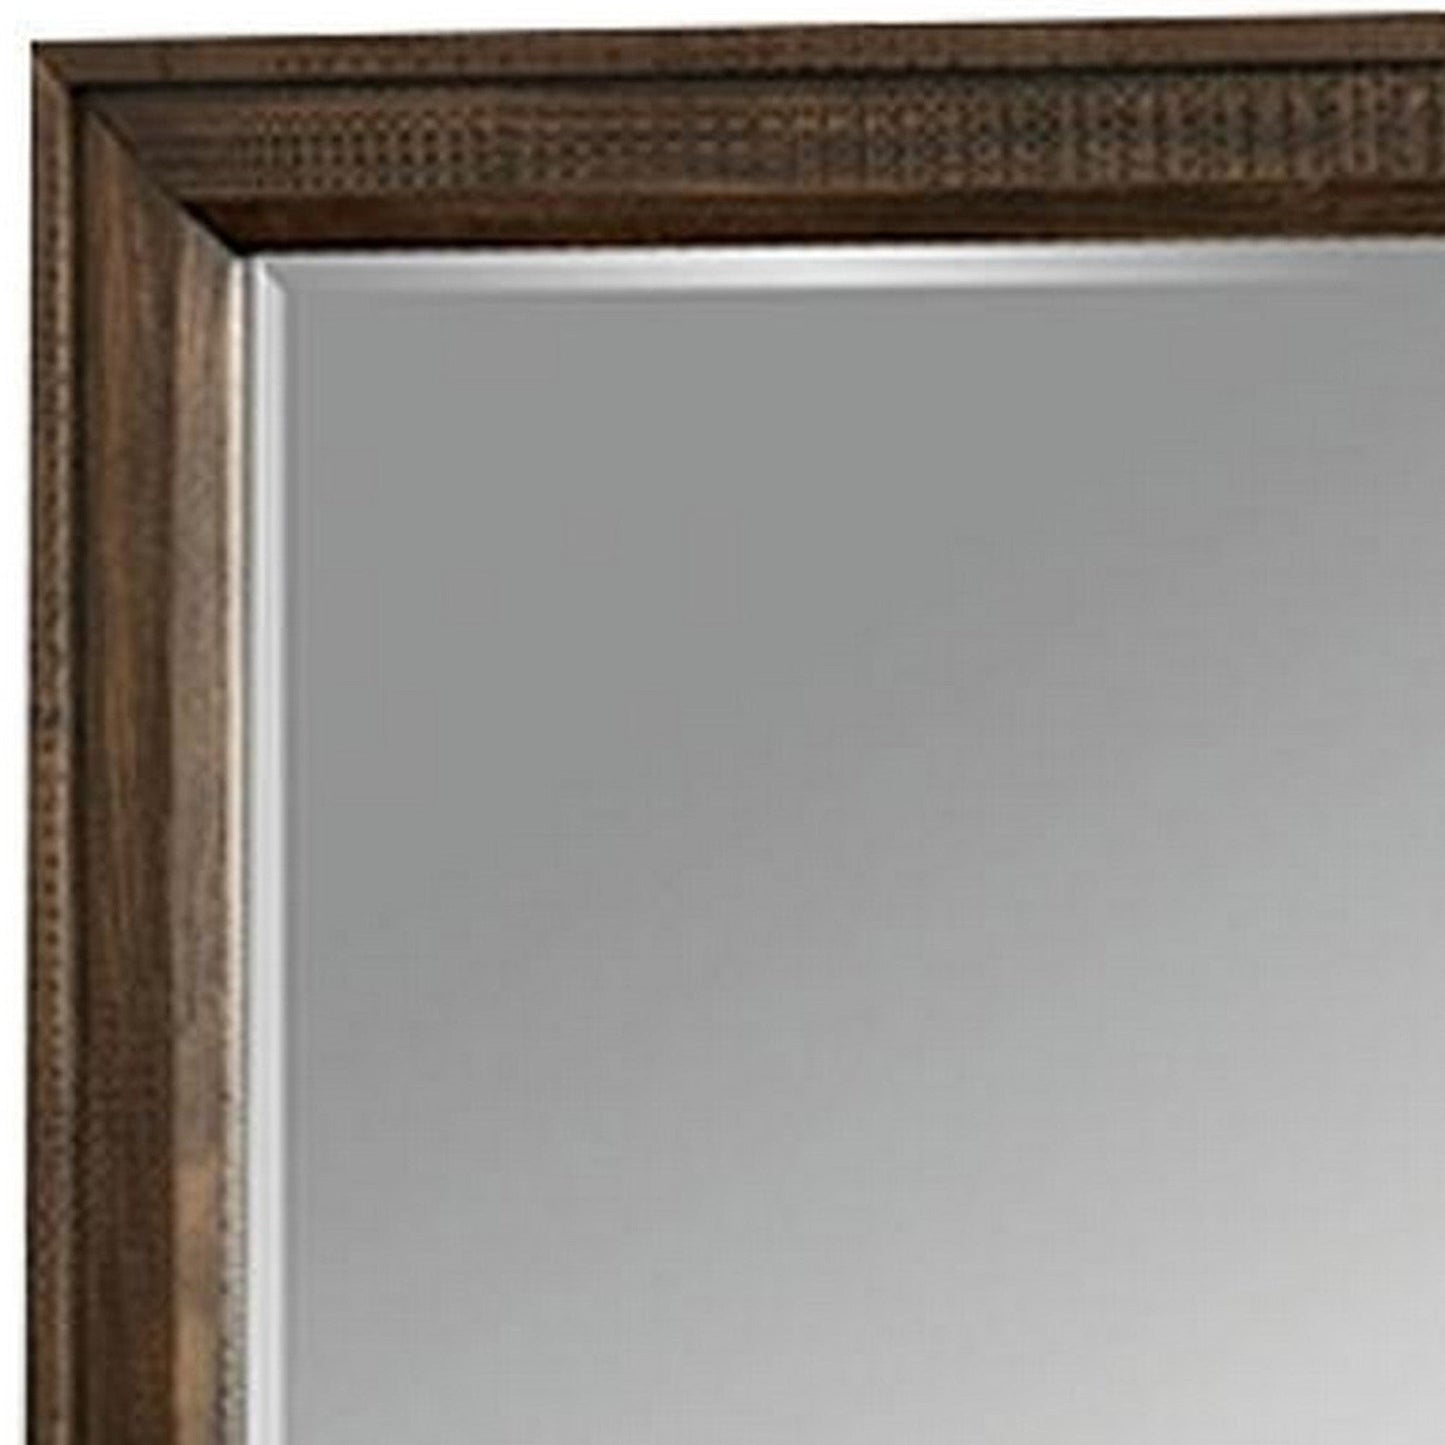 Benzara 42" Brown Rectangular Wooden Frame Transitional Mirror